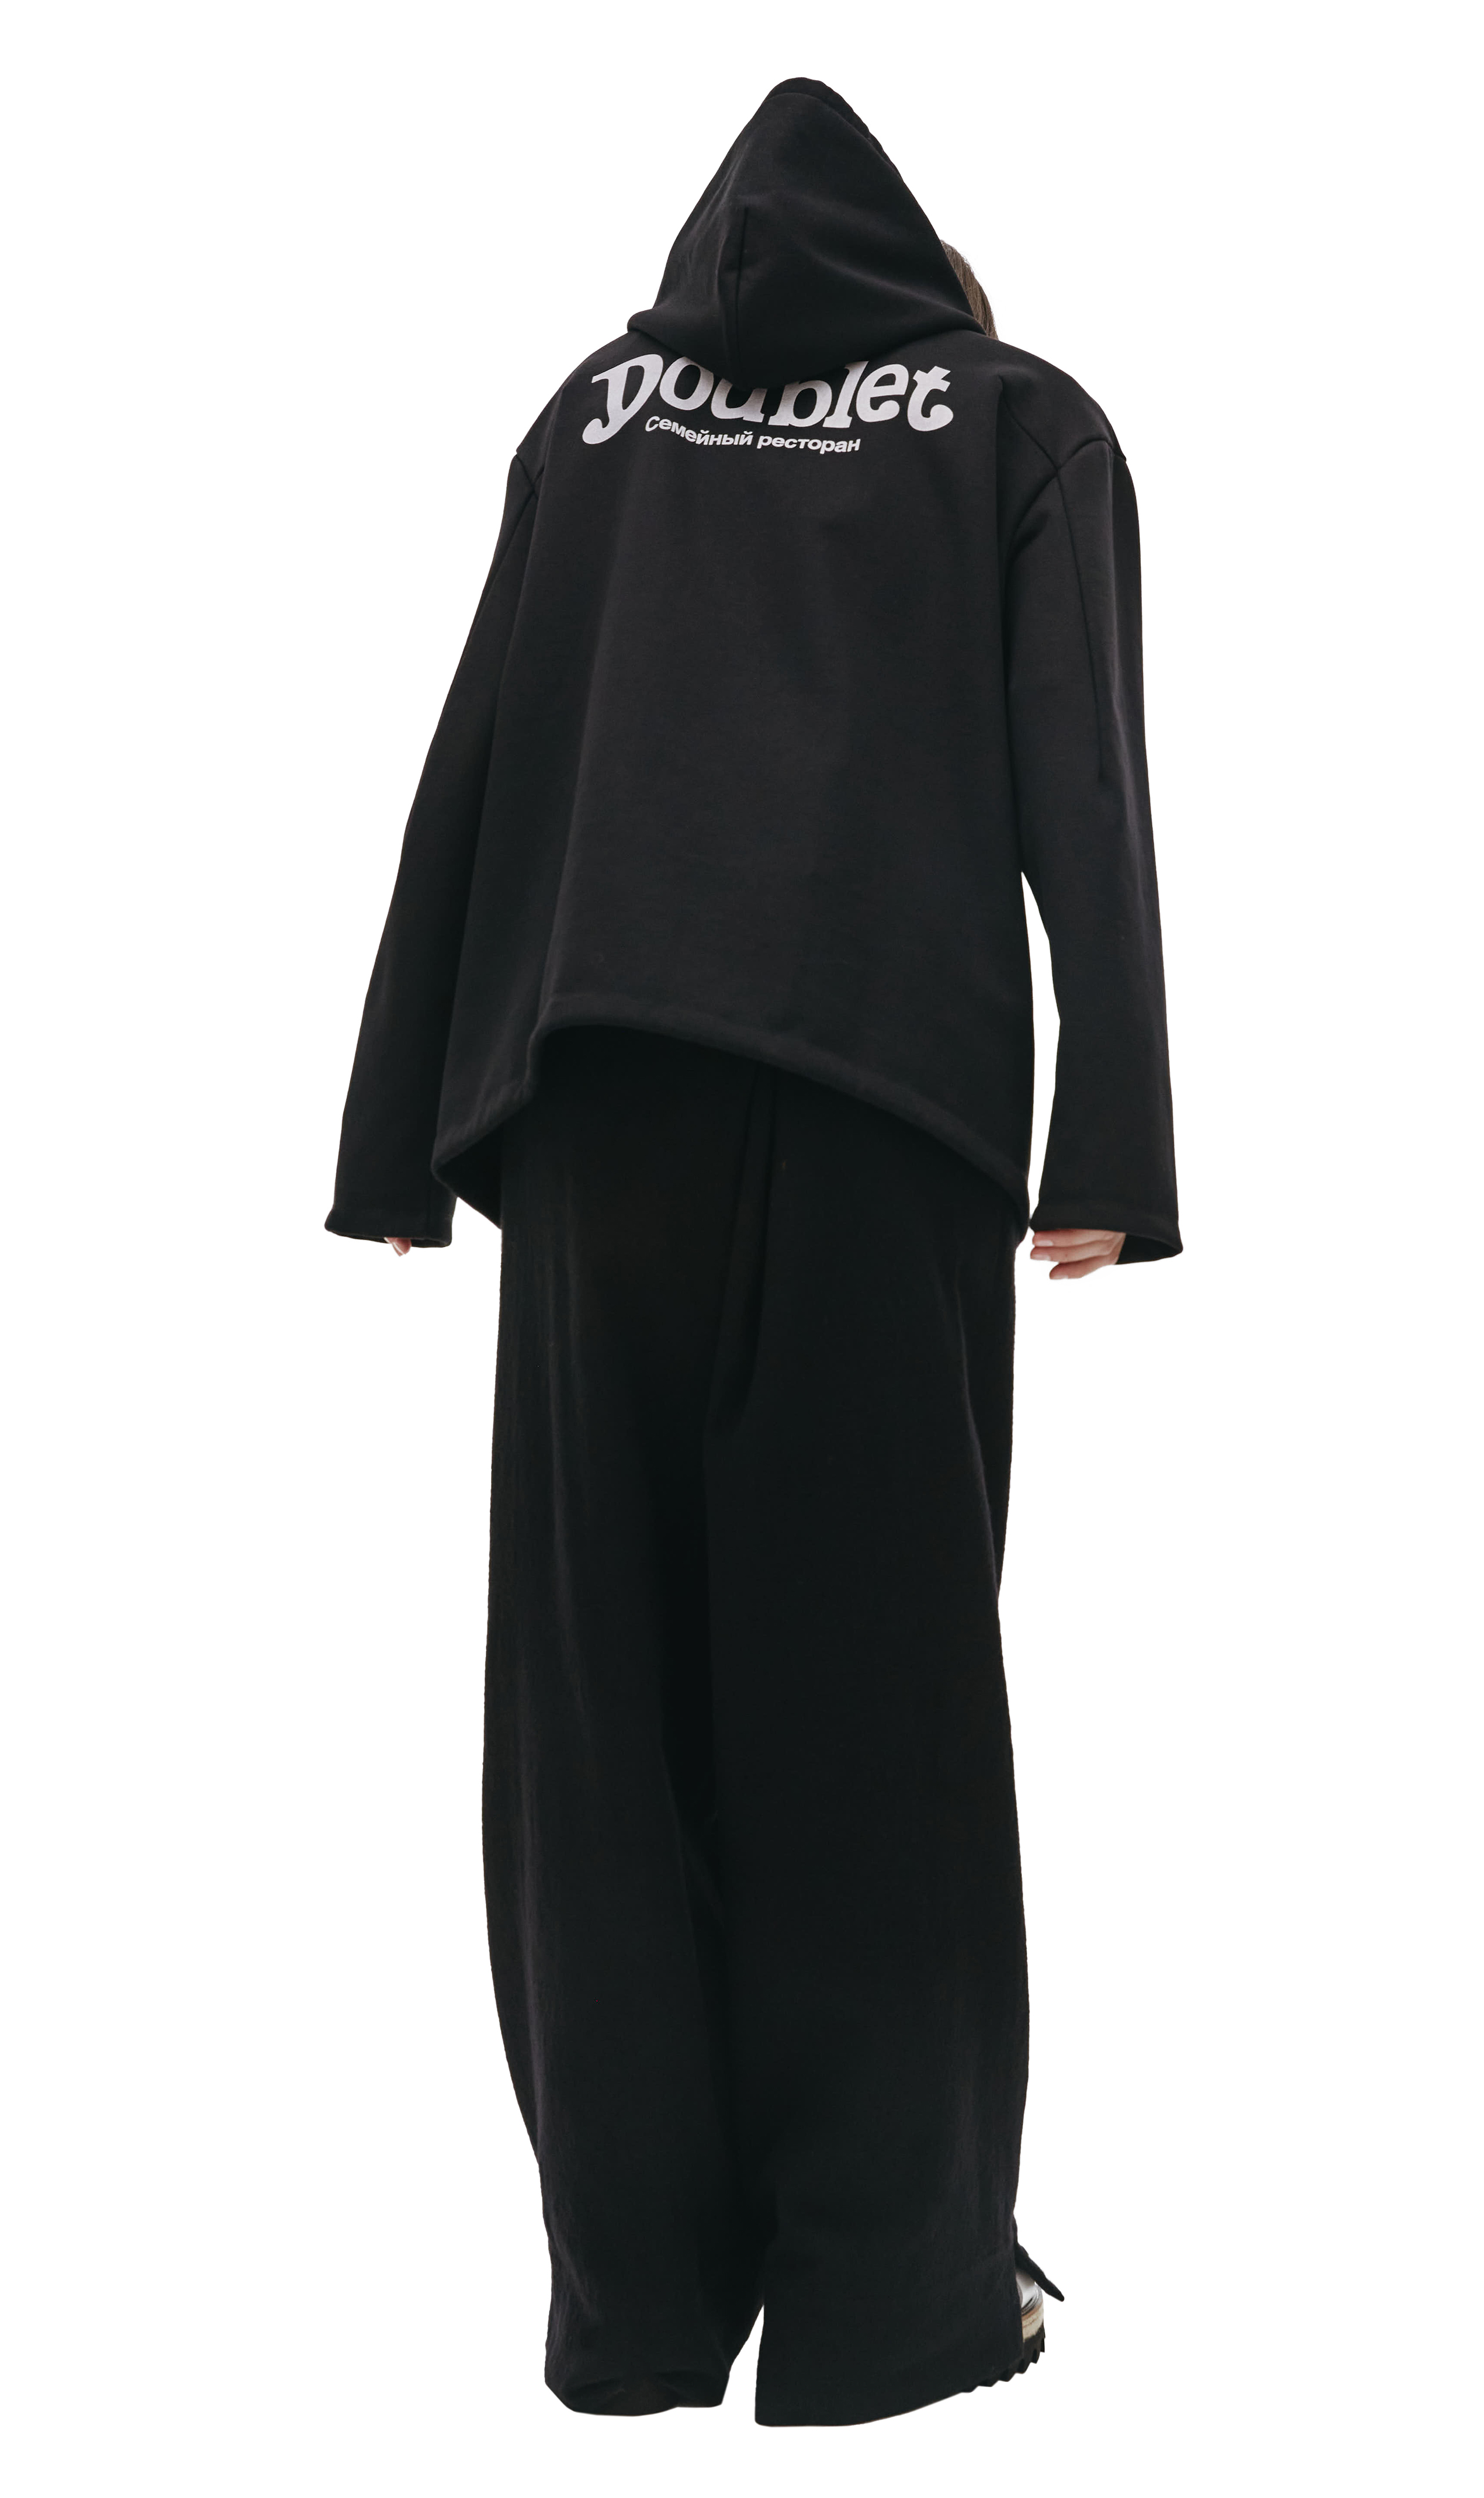 Buy Doublet women black hoodie doublet x sv for $715 online on 